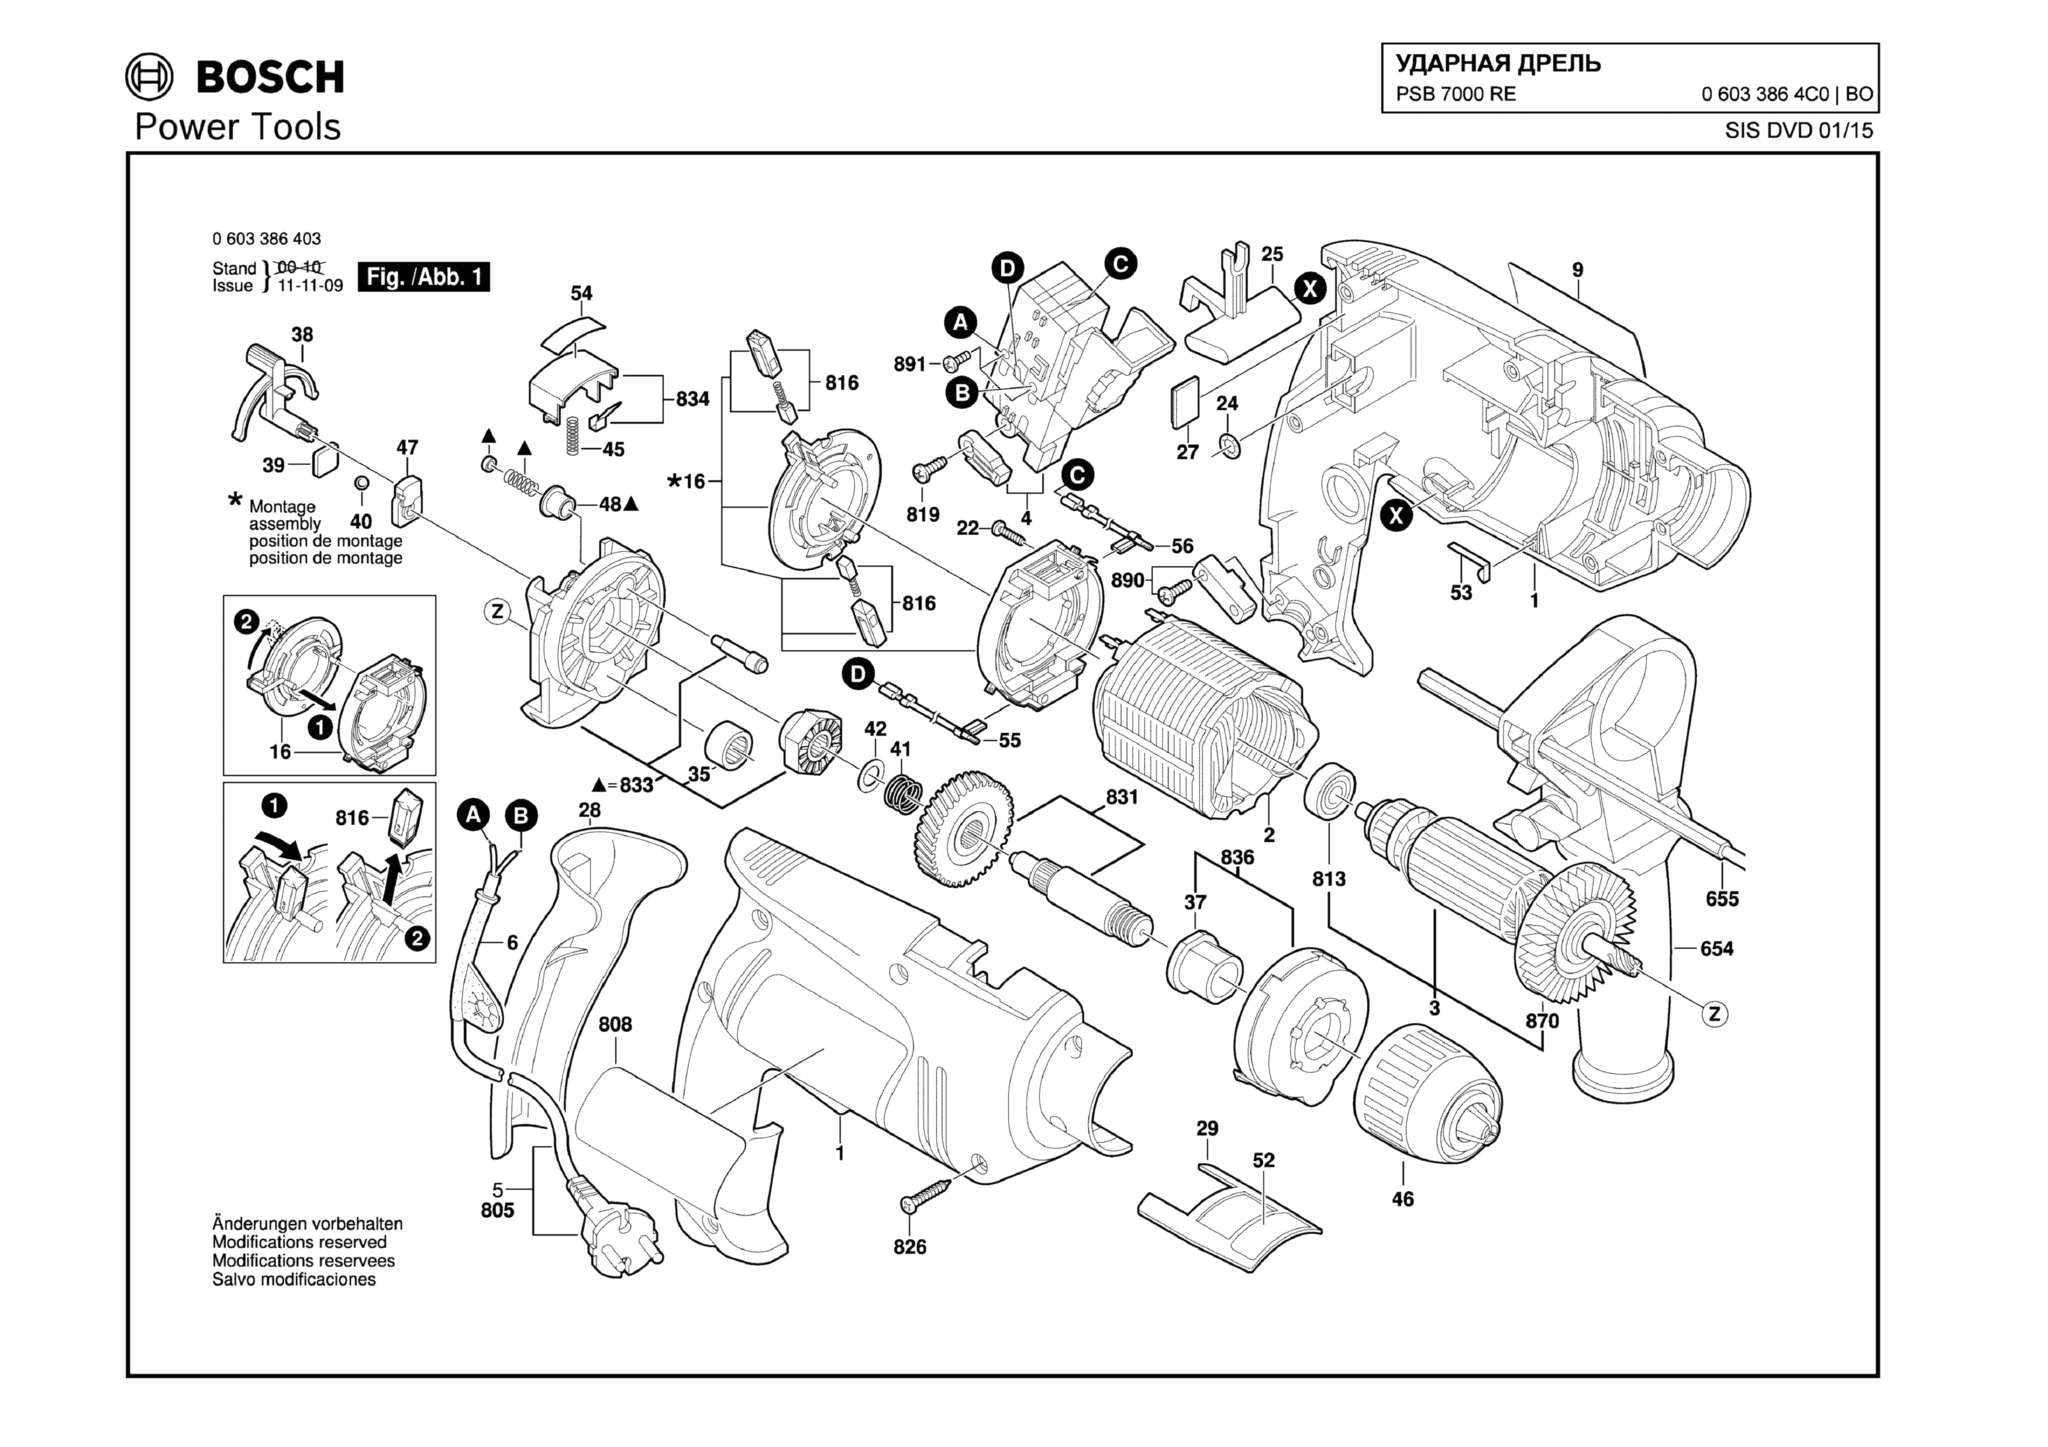 Запчасти, схема и деталировка Bosch PSB 7000 RE (ТИП 06033864C0)